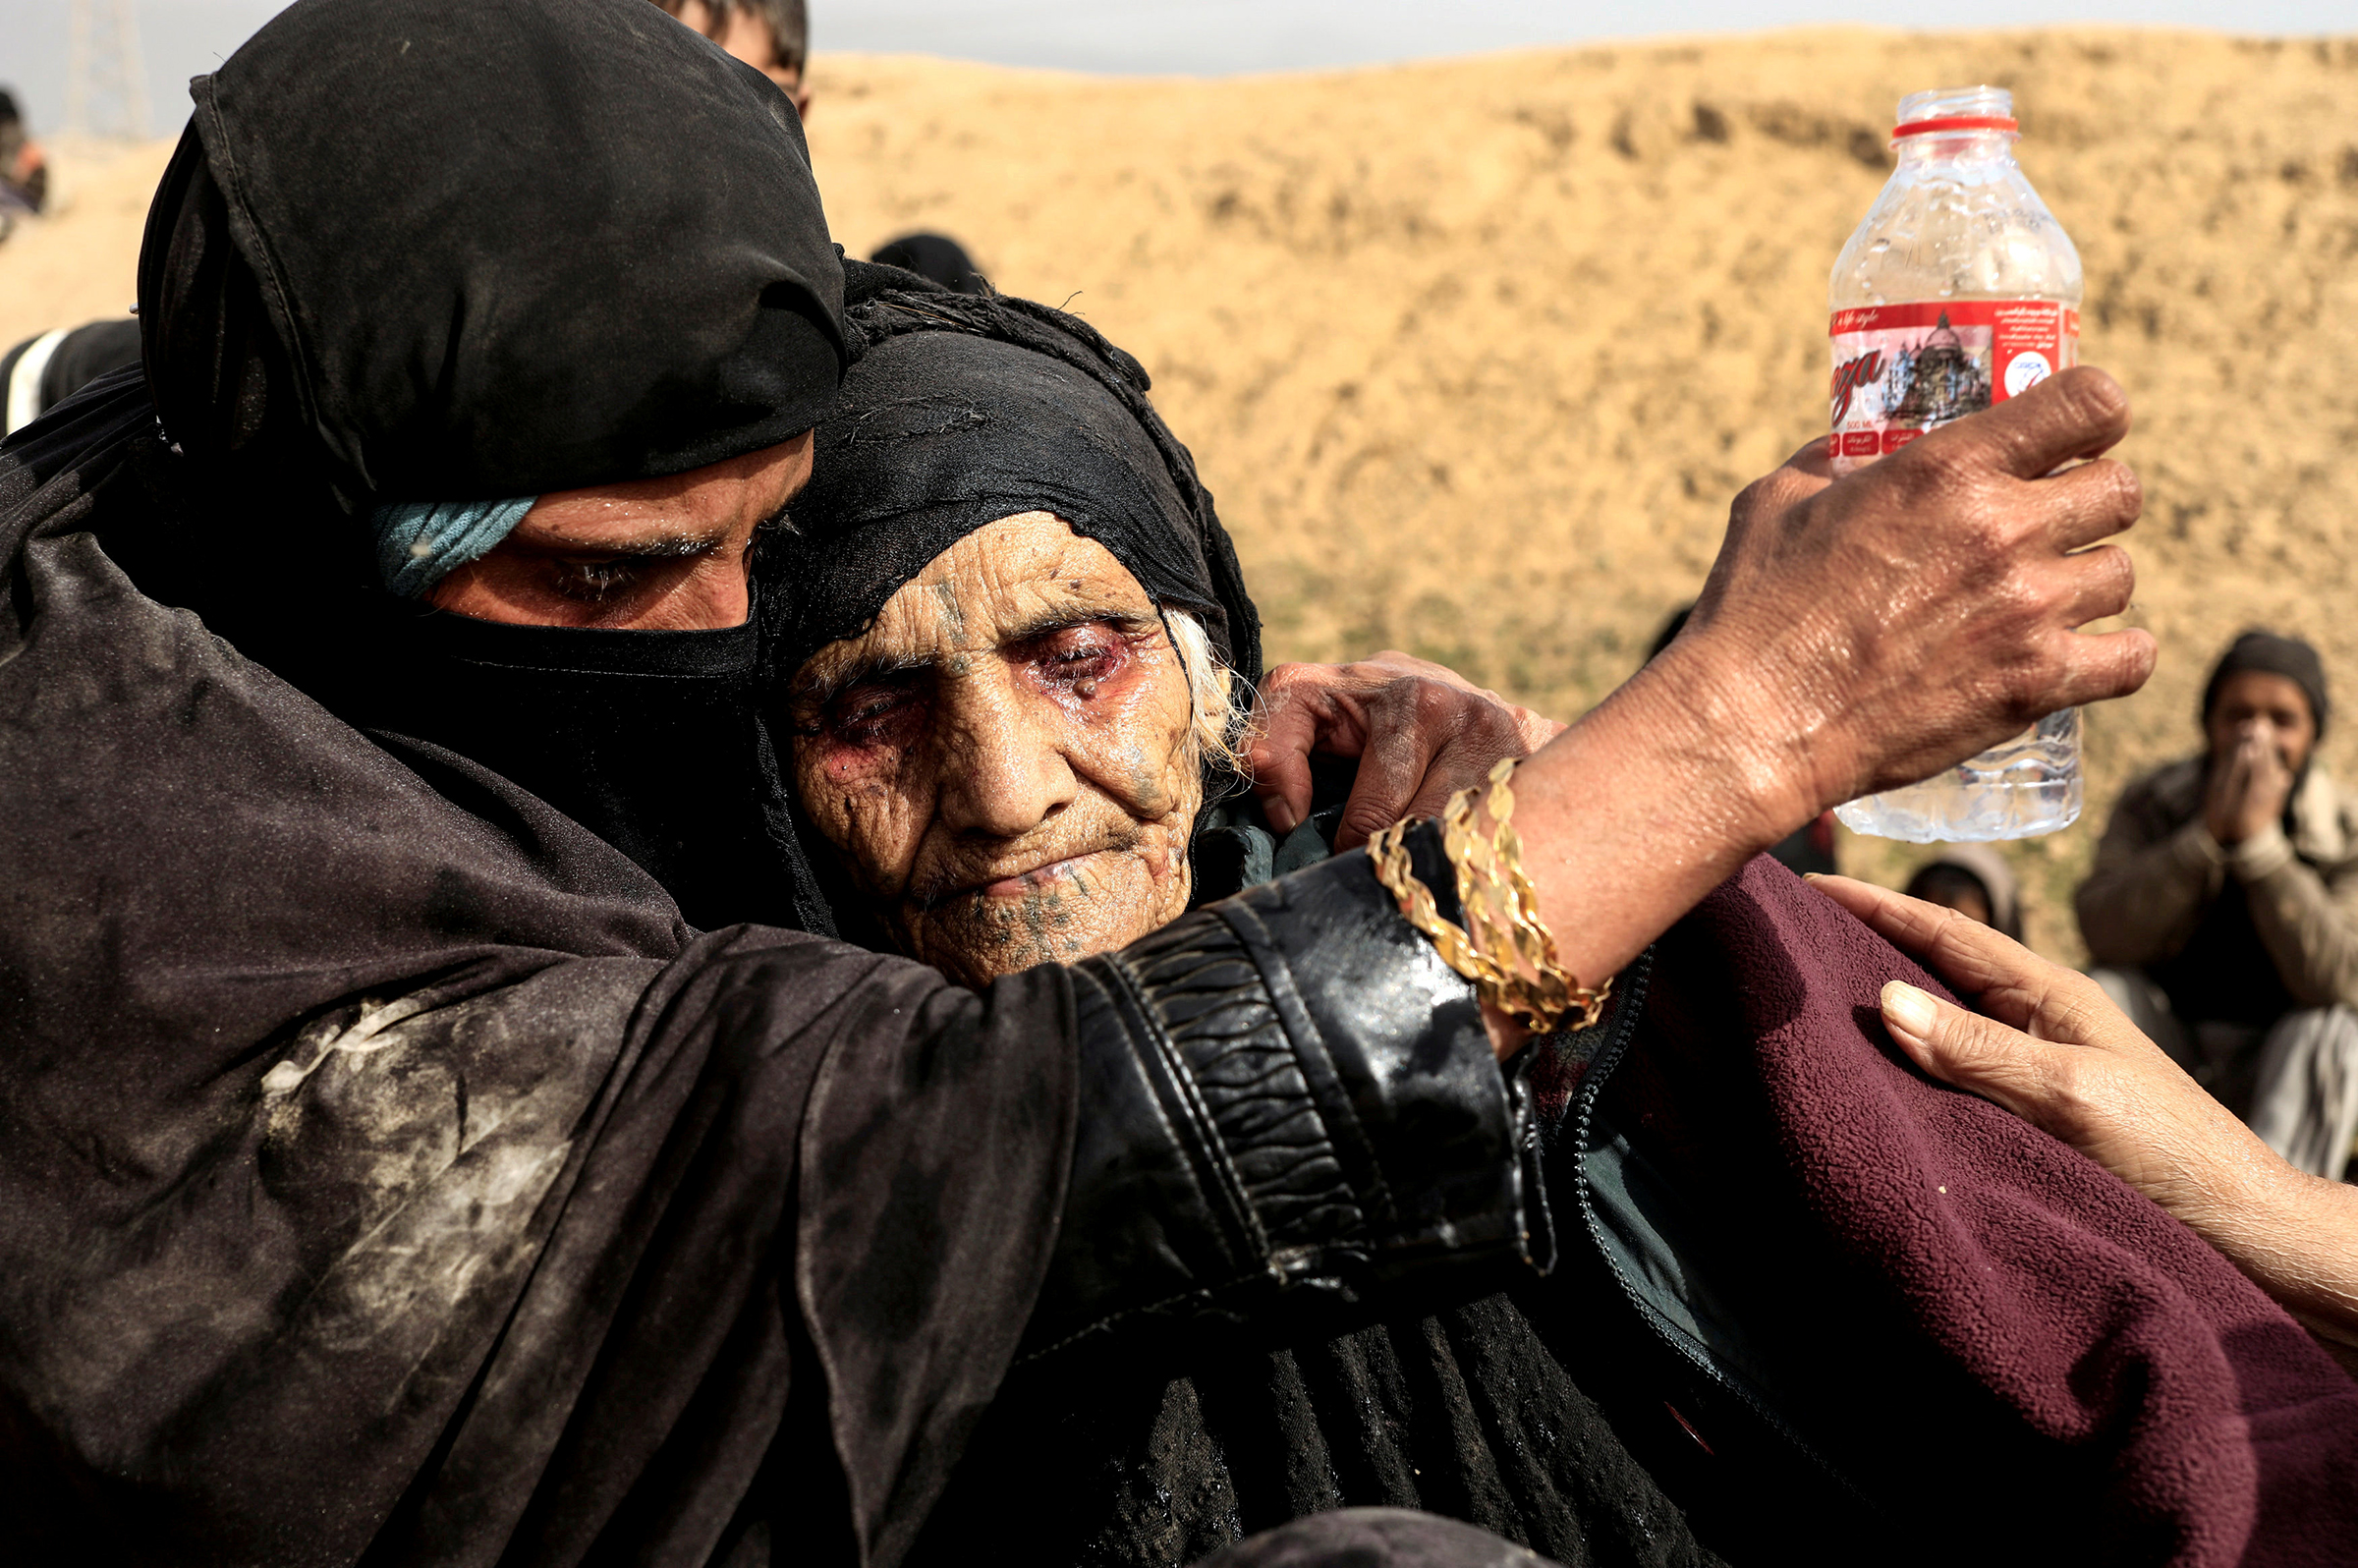 Автор фото Зохра Бенсемра: &laquo;Я сделала это фото в пустыне, на окраине западного Мосула. Это 90-летняя Хатла али-Абдалла, после того как она сбежала из города. Ее глаза были красными от усталости, Хатла была так измотана, что не могла стоять и даже сидеть. Она выглядела так, будто не ела и не пила очень давно.

Несколько дней спустя я нашла ее в лагере для беженцев. Она сказала мне: &laquo;Война &mdash; это худшее, что я видела&raquo;. И она заставила меня улыбнуться, вспоминая про своих 20 куриц, которых пришлось оставить дома. Она держала их в подвале и очень беспокоилась о них. Несмотря на все ужасы войны, она сказала тогда: &laquo;Даже животные заслуживают жизни&raquo;.
